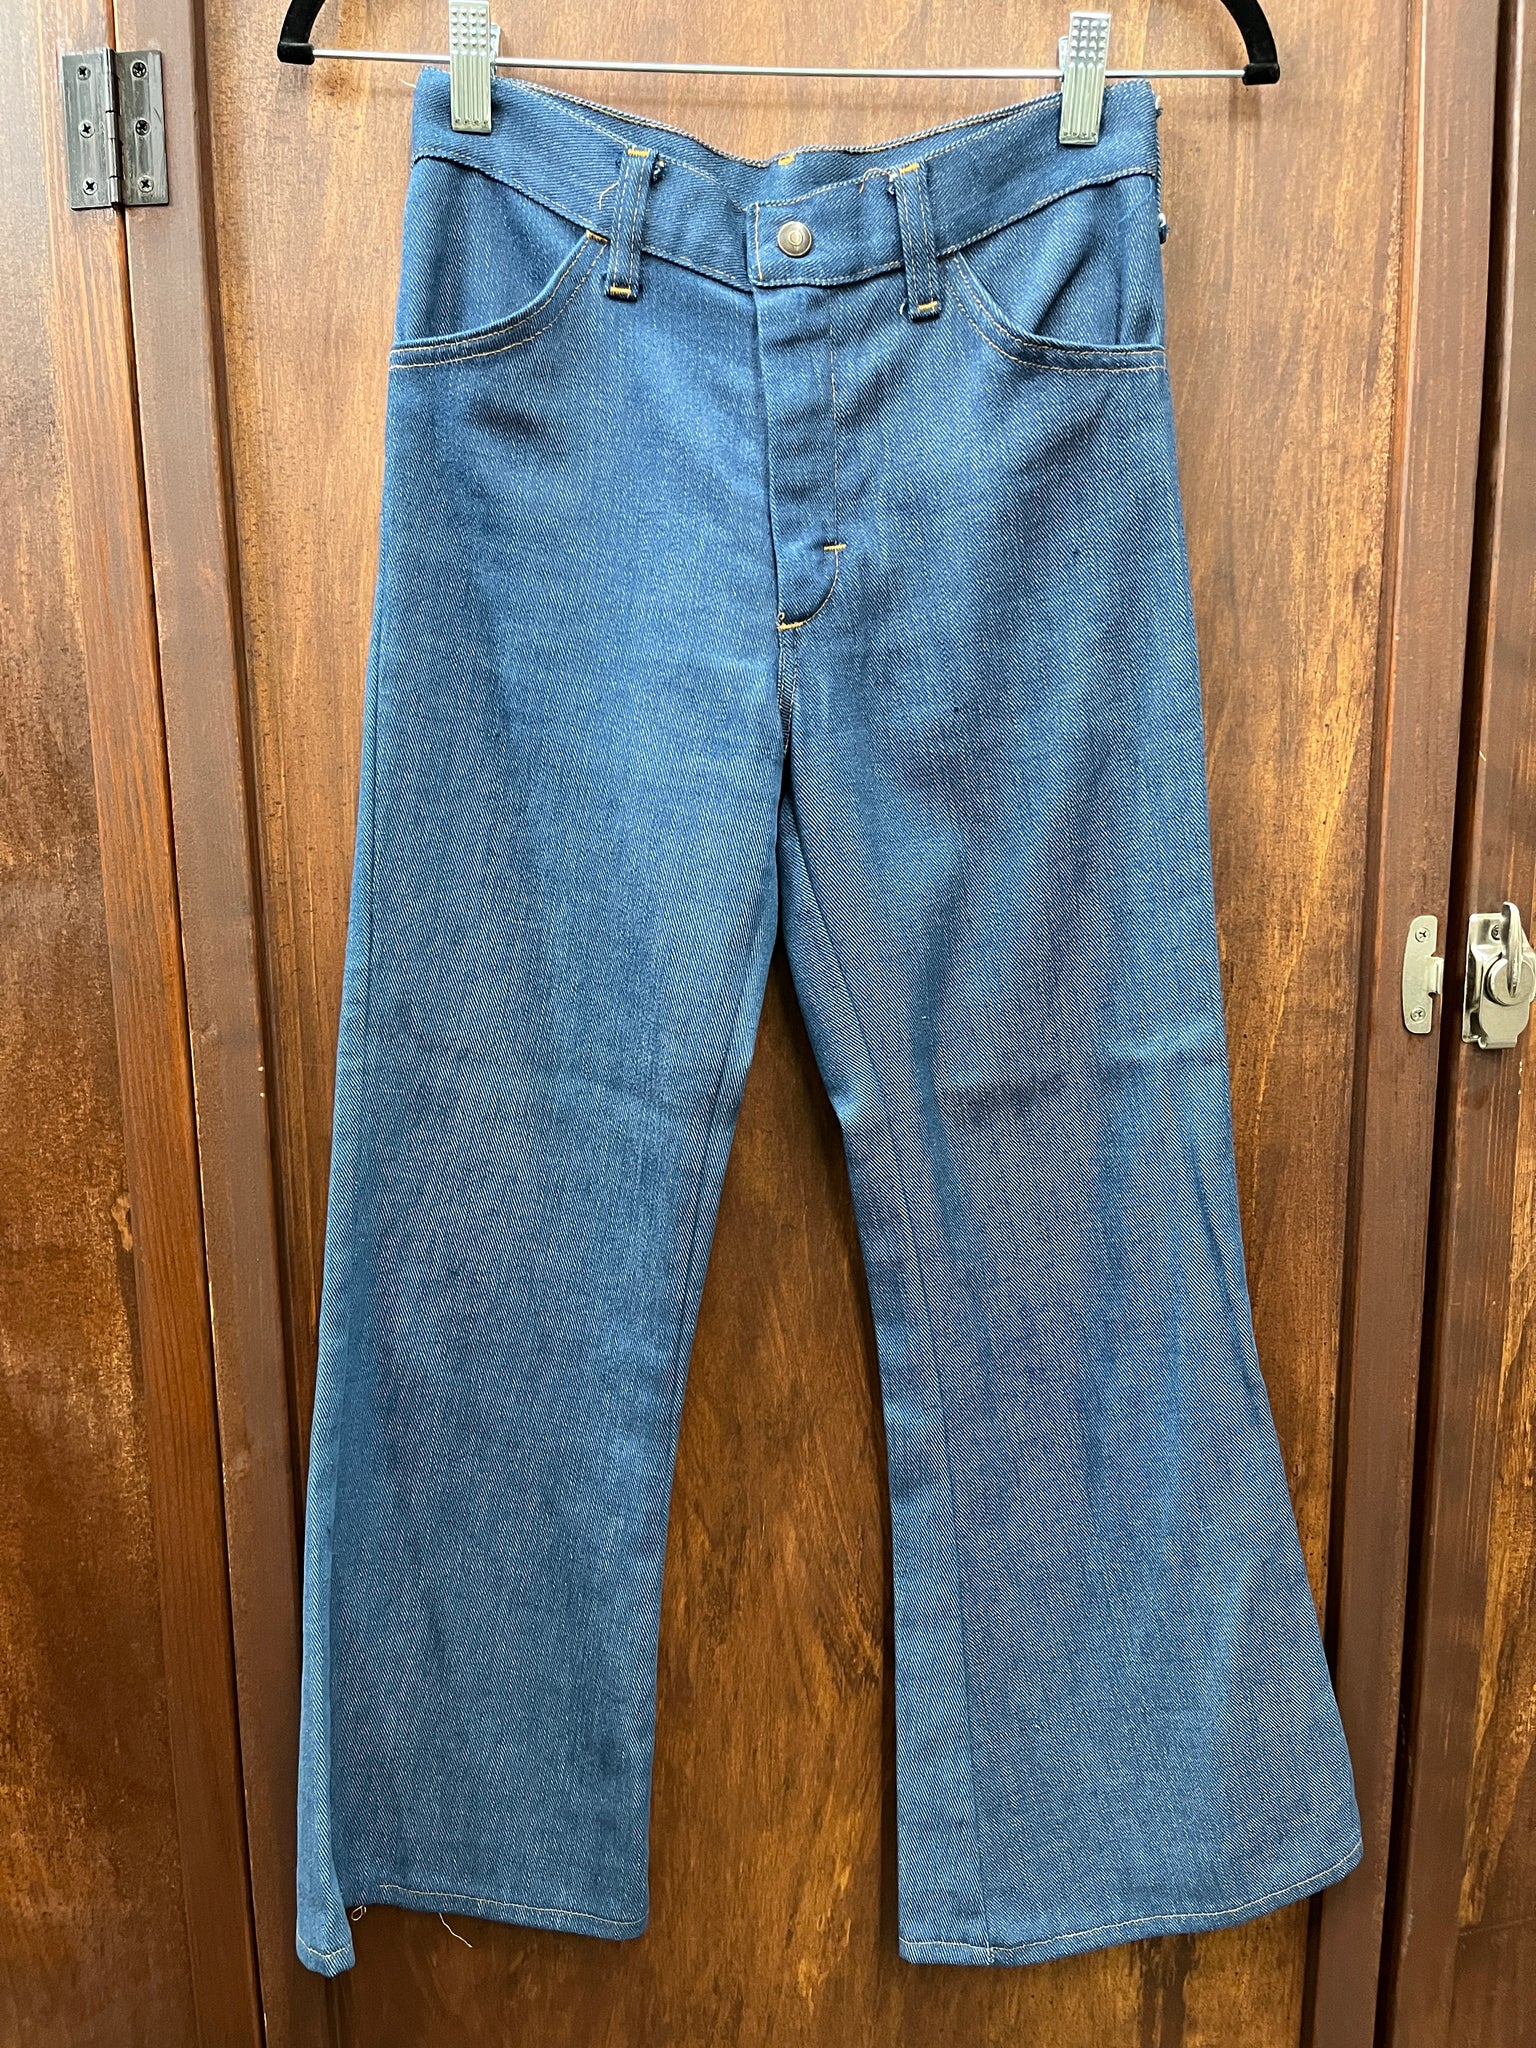 1960s KIDS JEANS- bellbottom jeans dark wash back tab